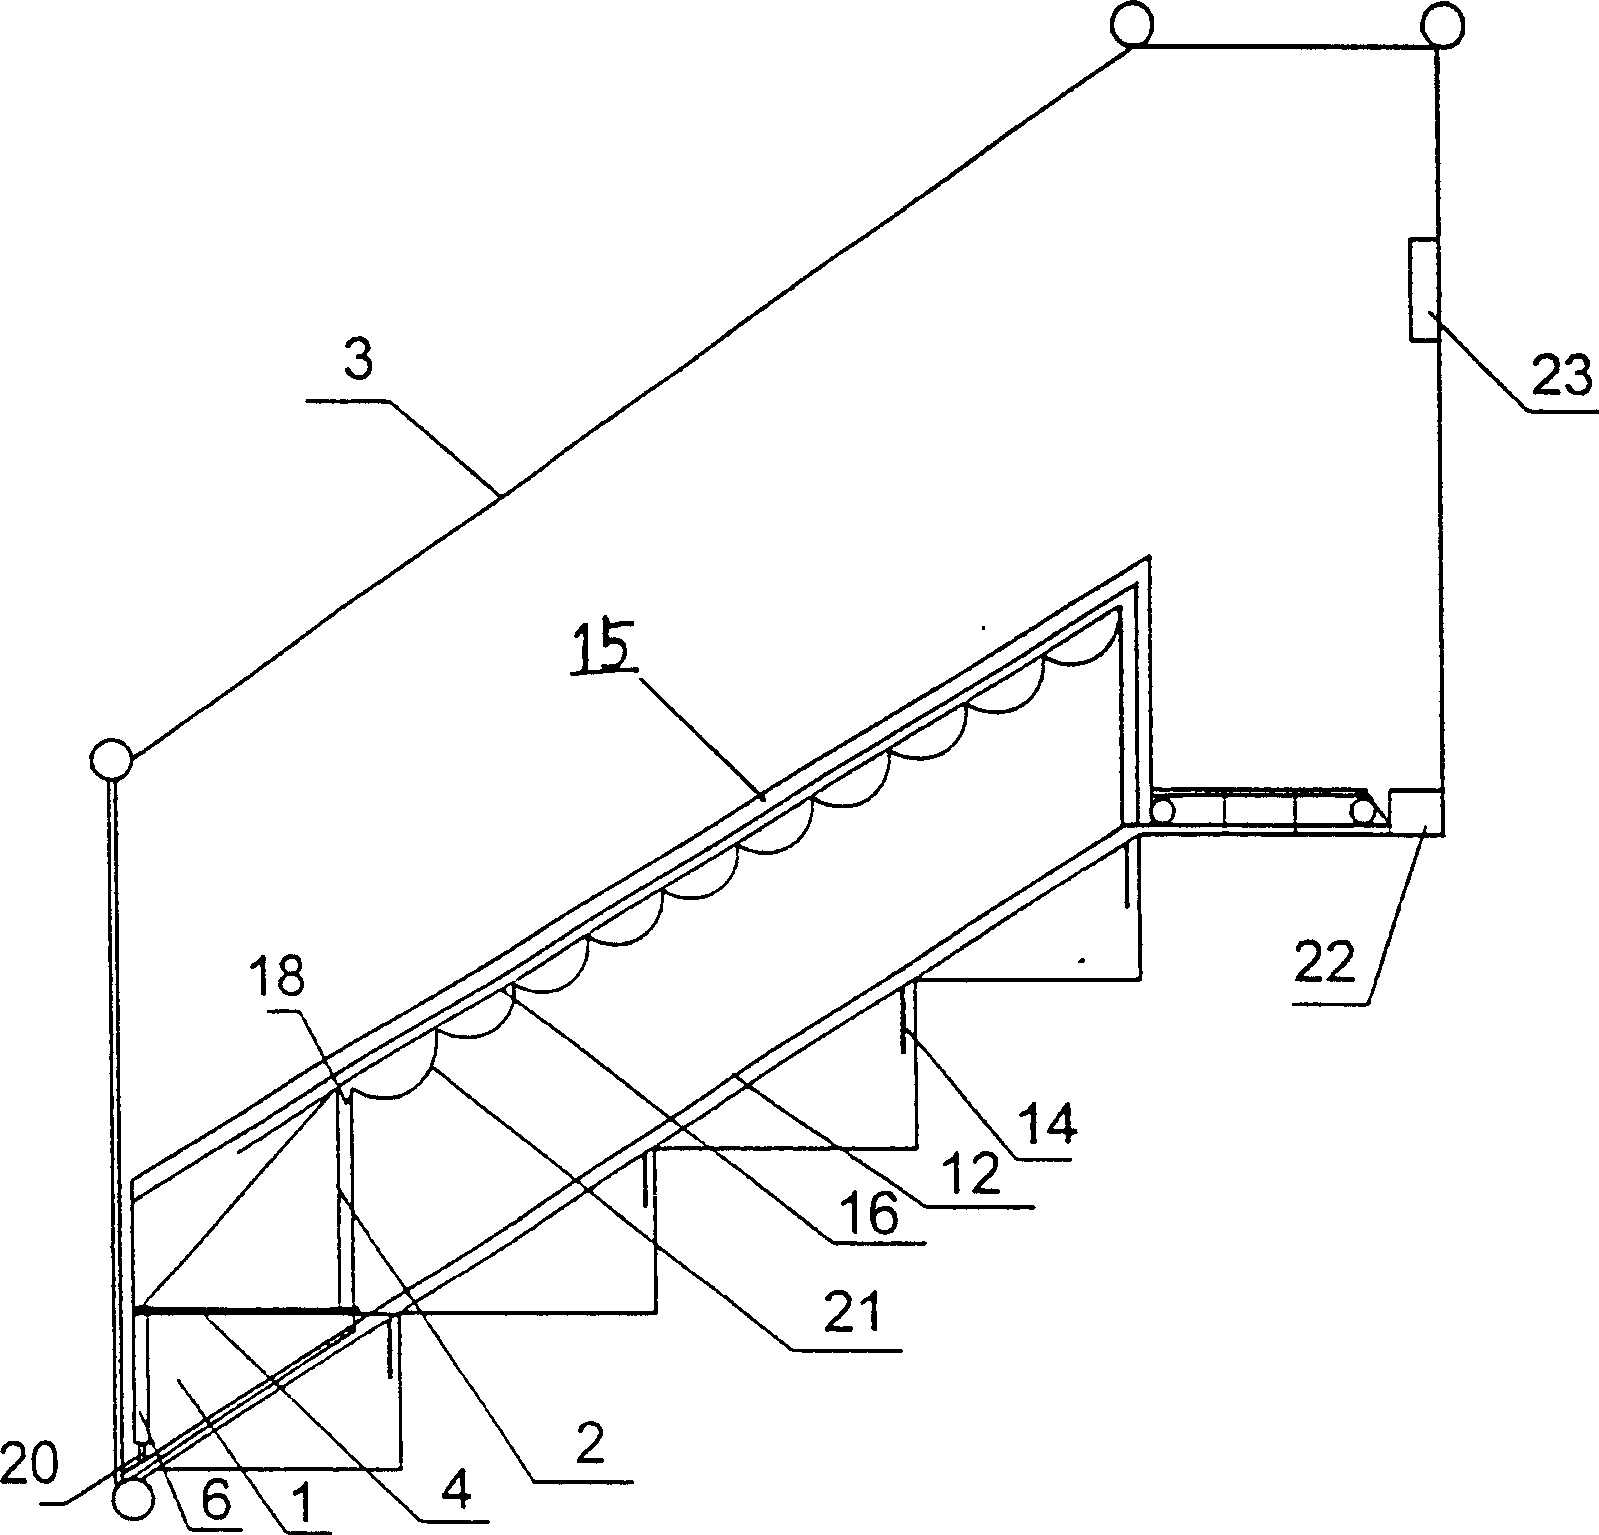 Domestic escalator